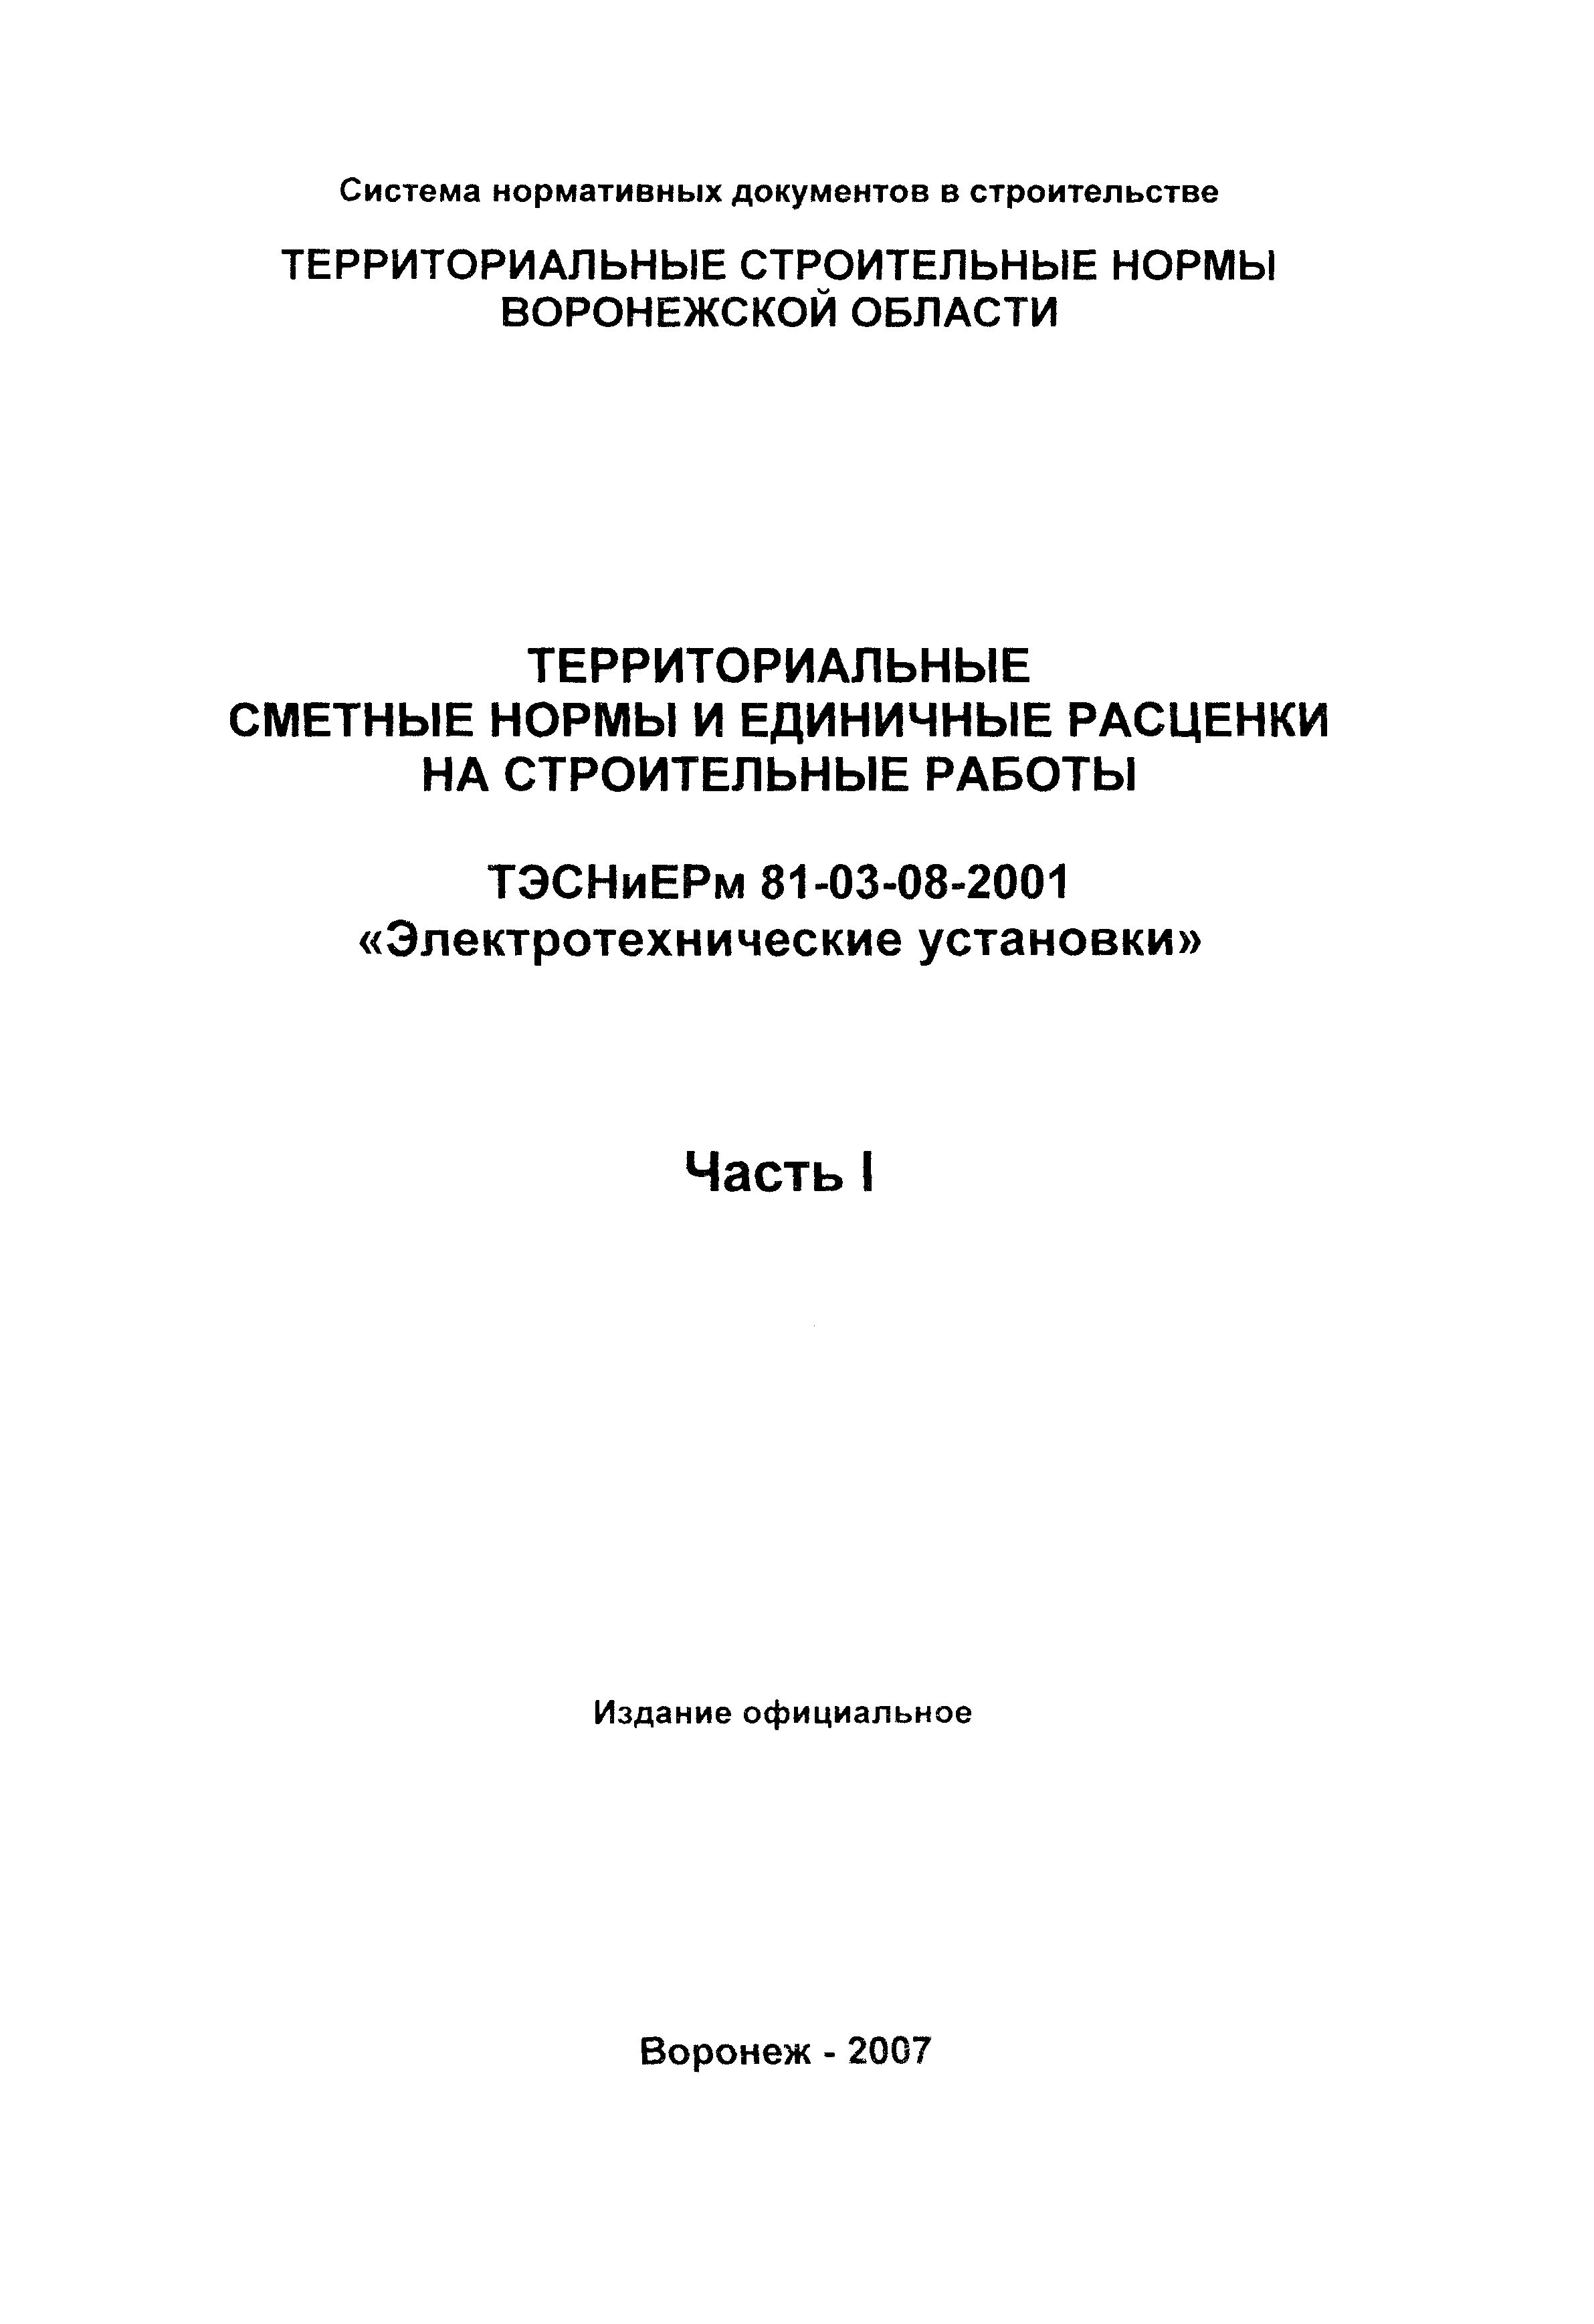 ТЭСНиЕРм Воронежской области 81-03-08-2001